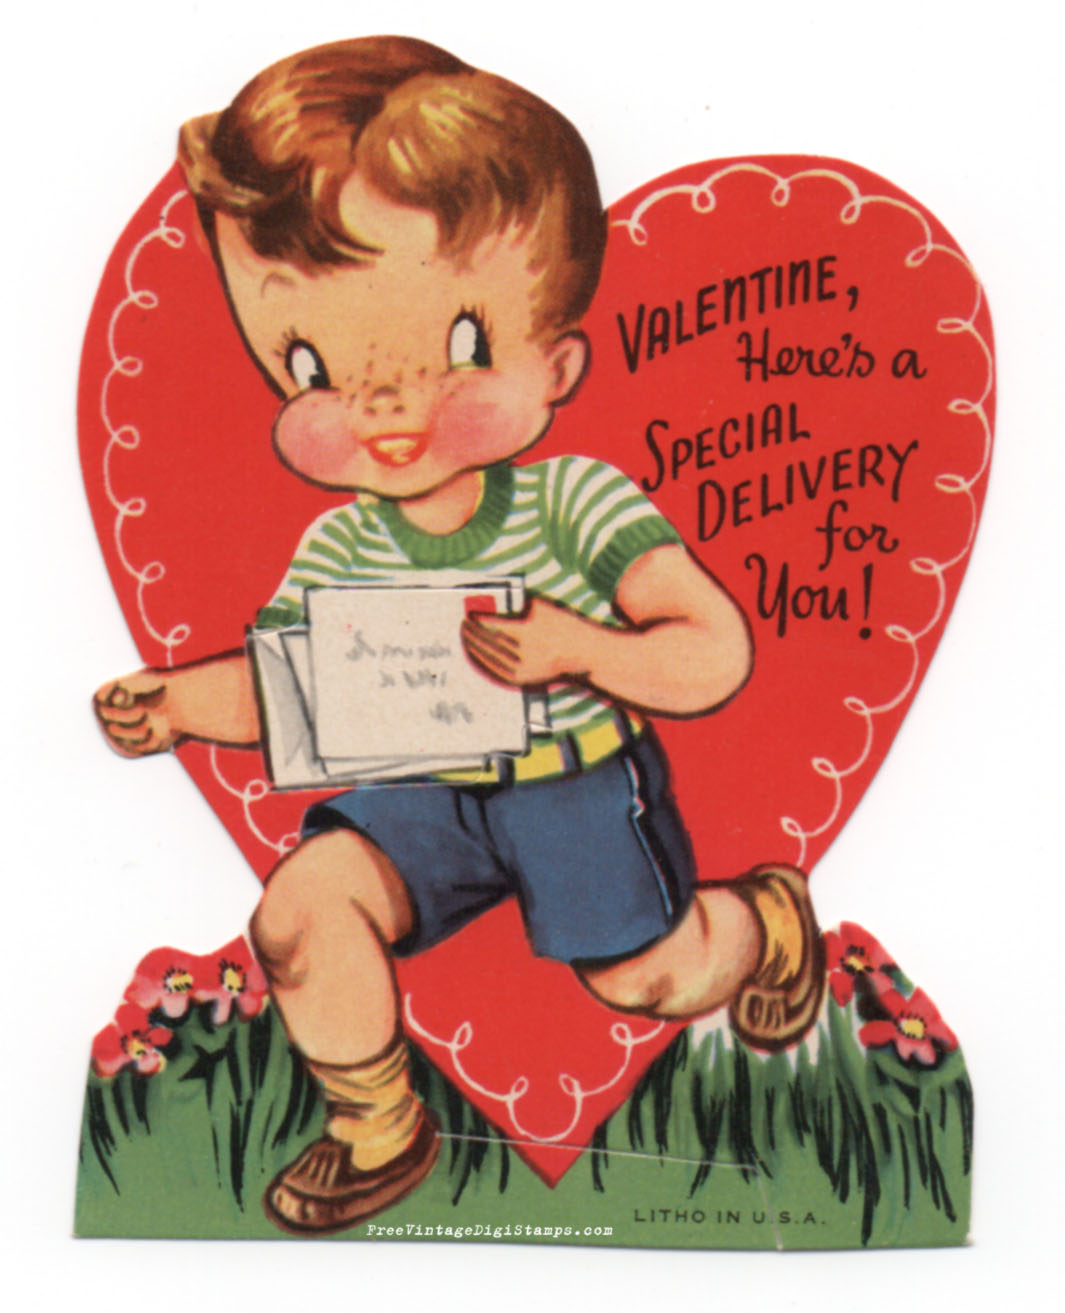 free-printable-vintage-valentines-printable-word-searches